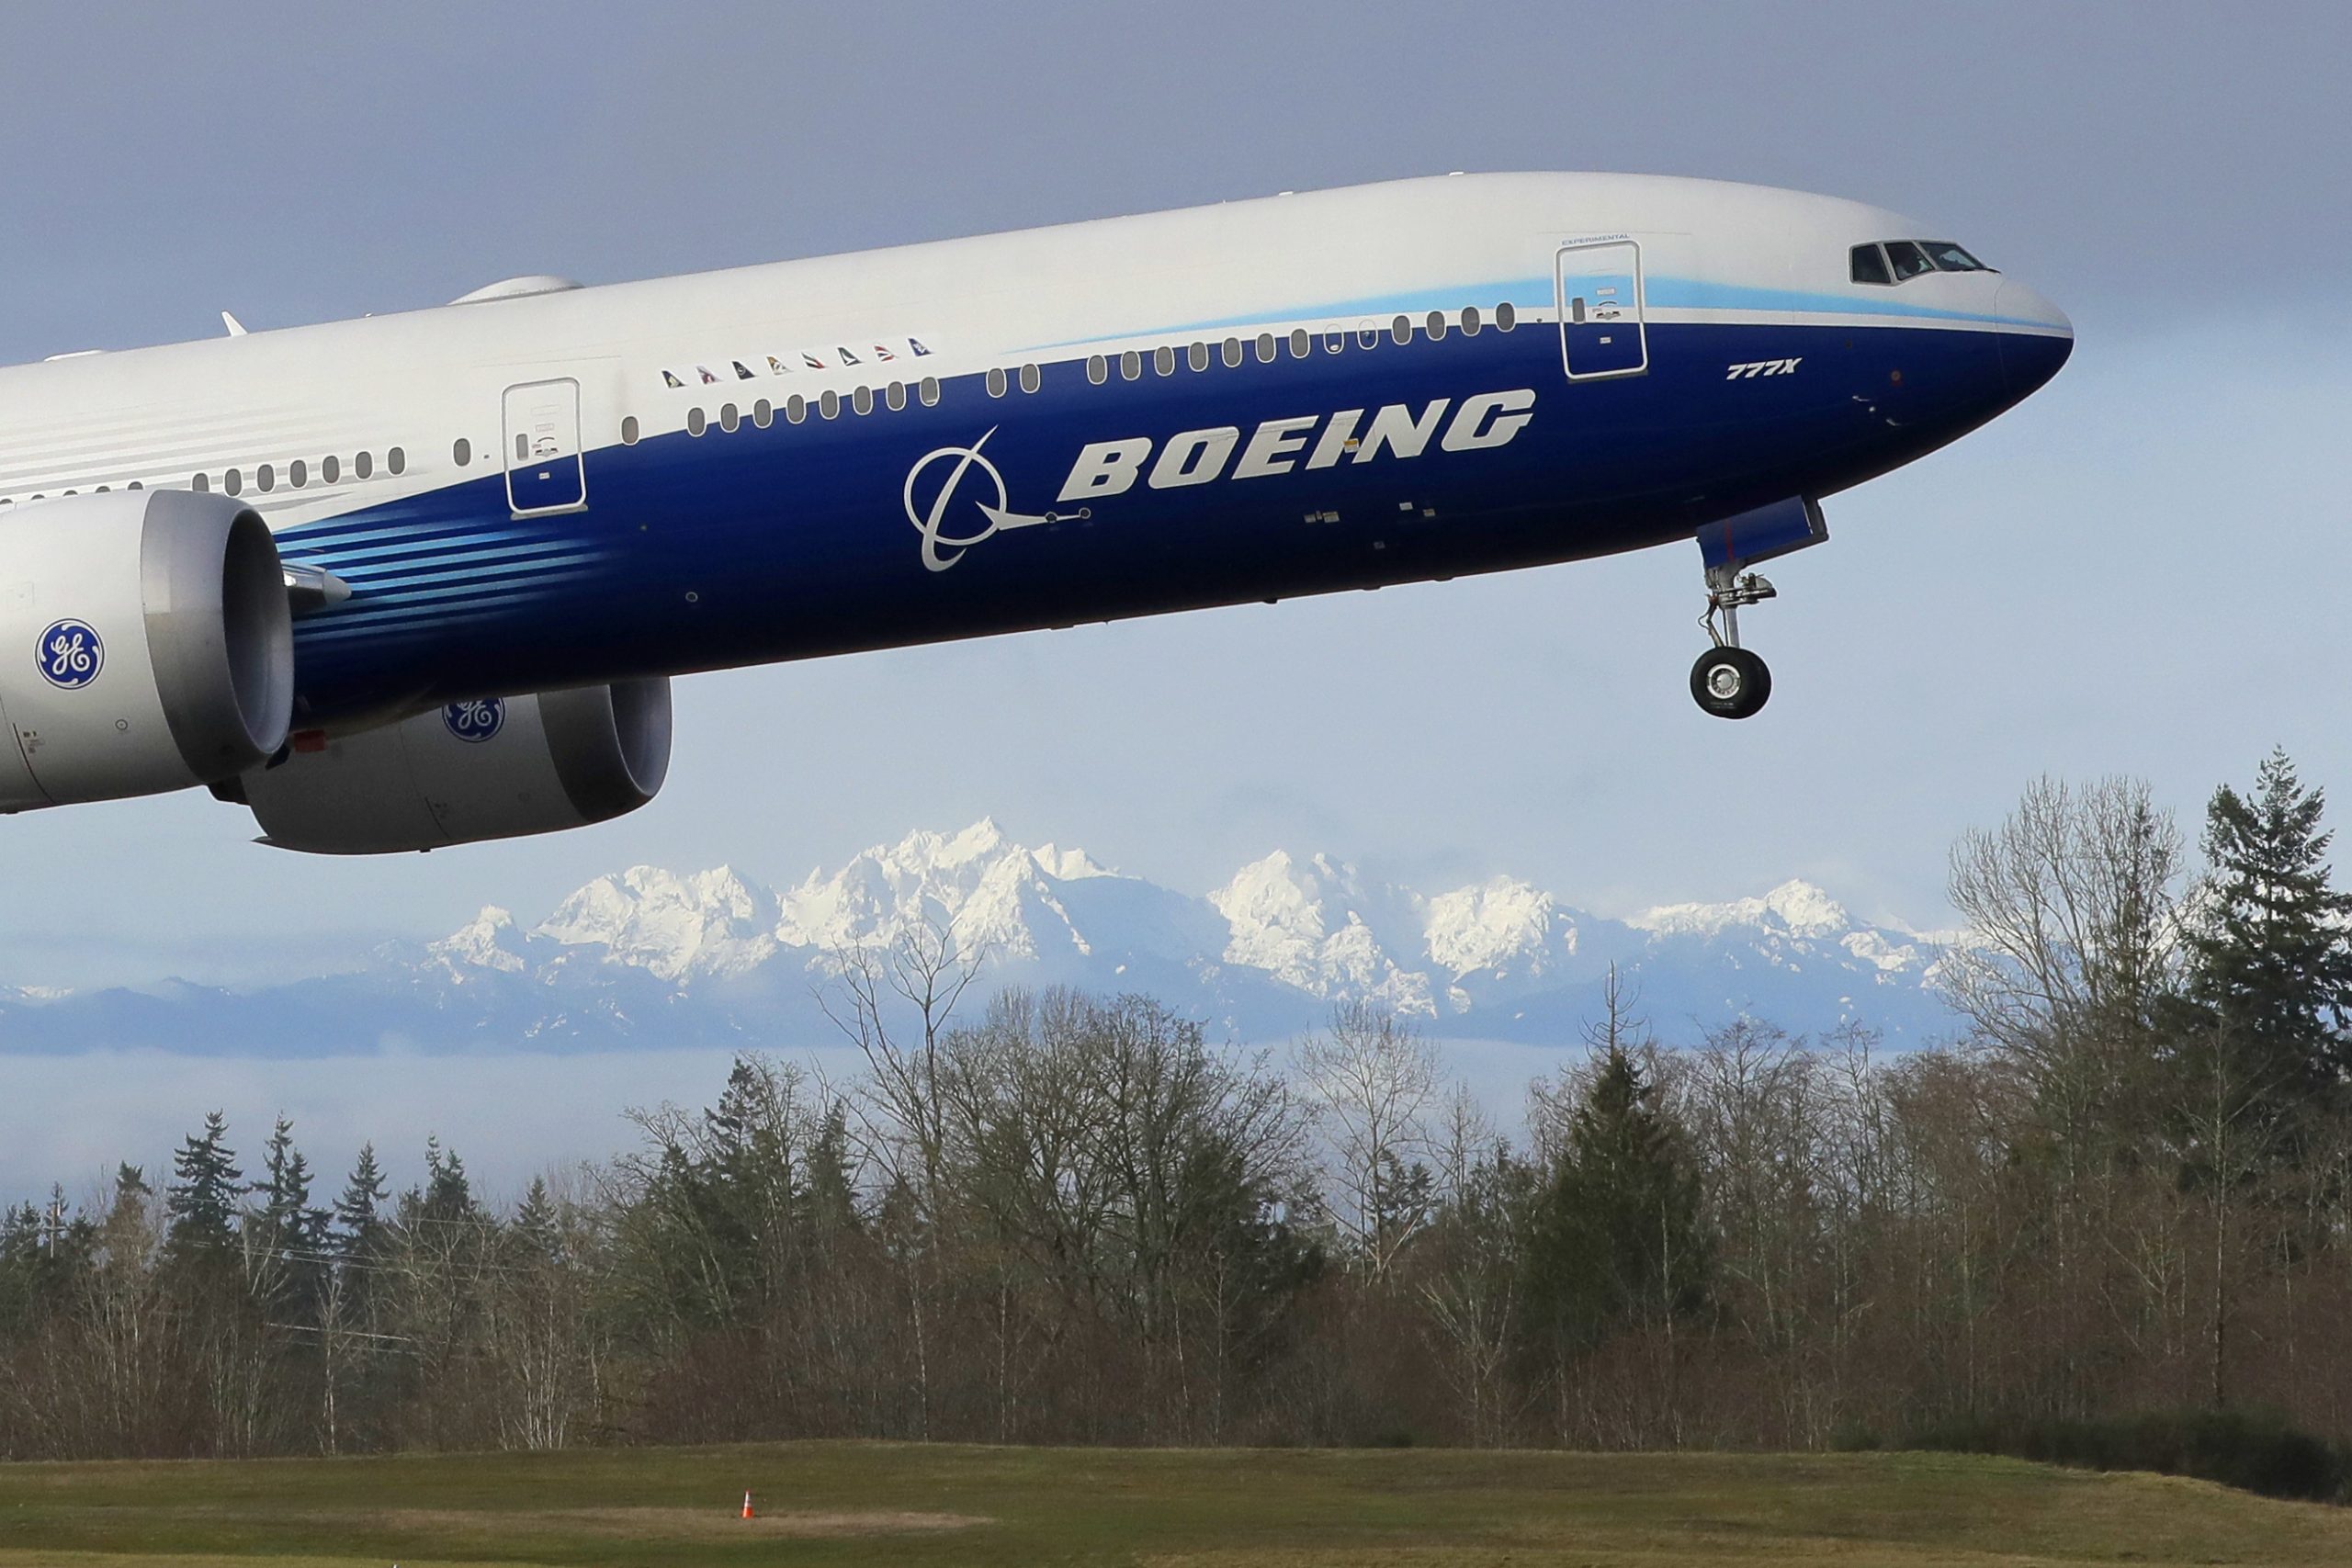 Il nuovo Boeing 777X decolla per il suo primo volo (LaPresse)